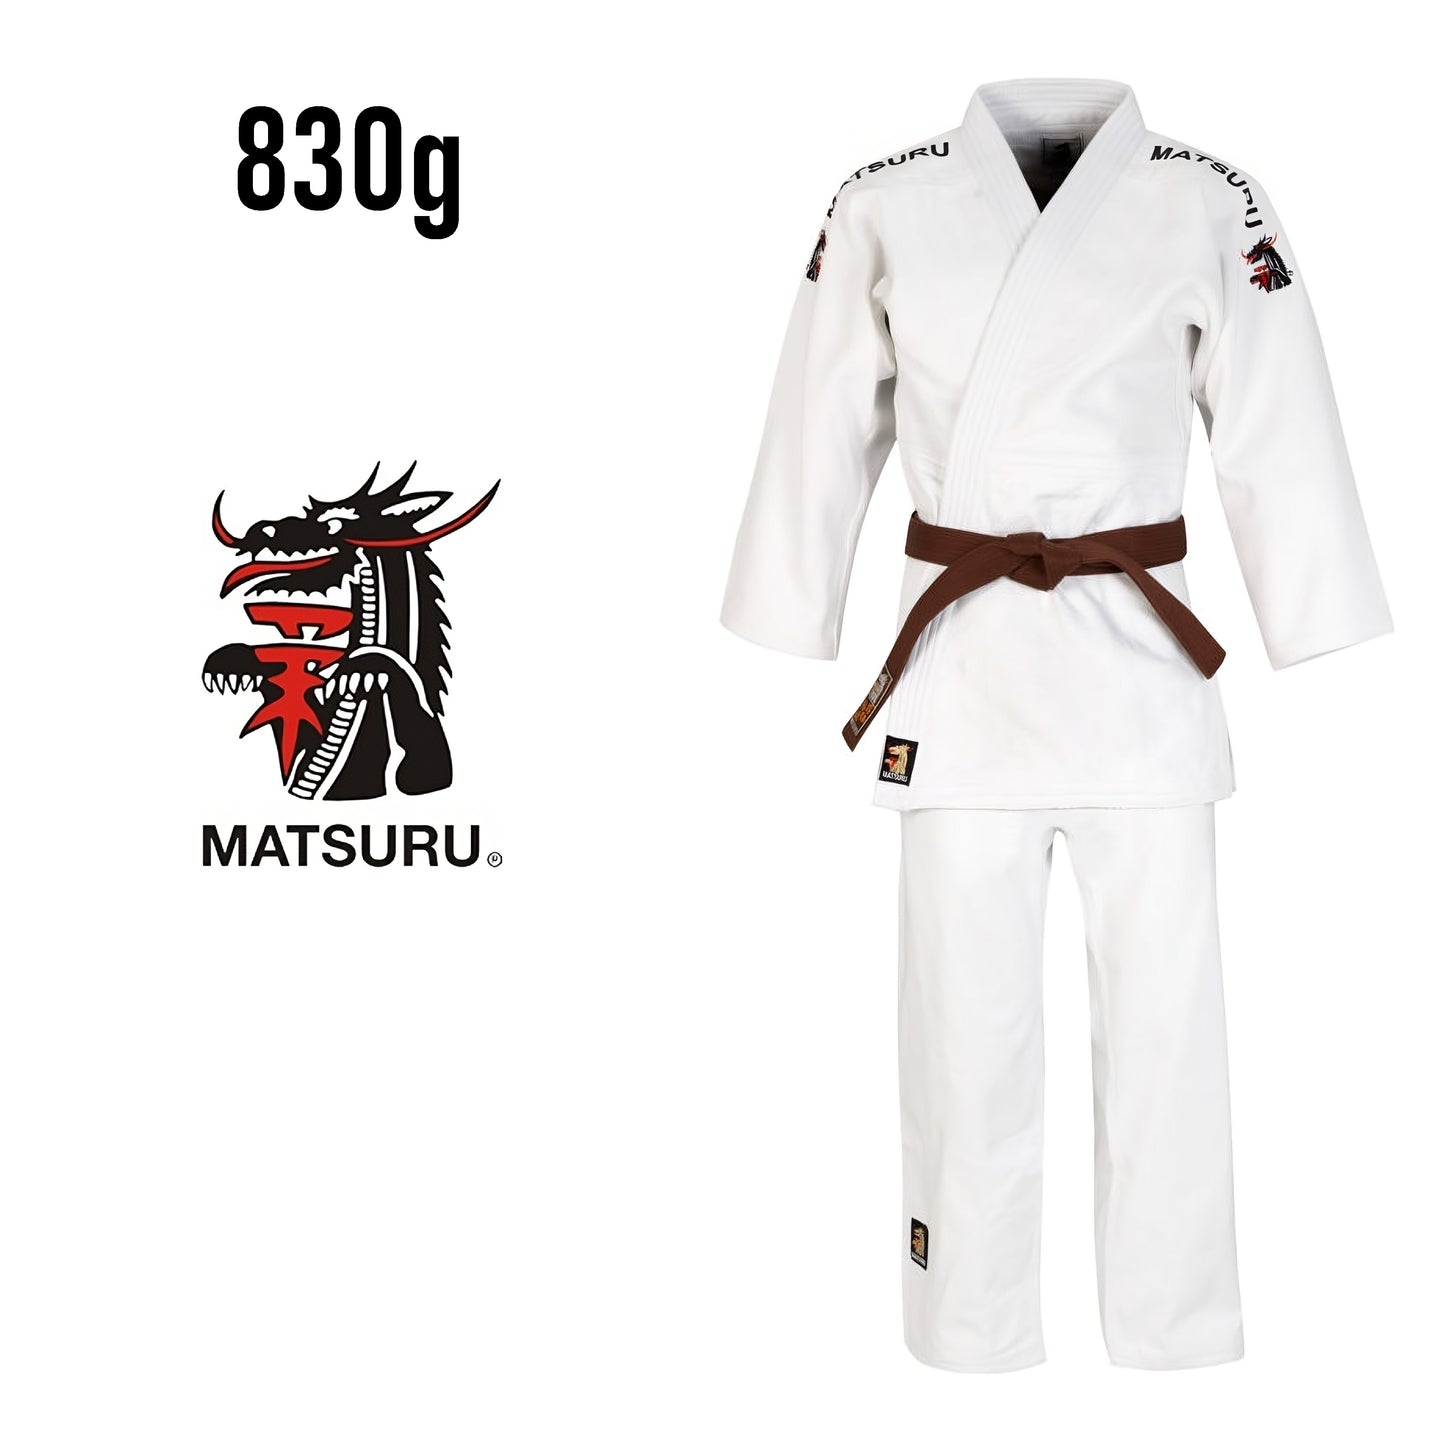 Judo-gi MATSURU SETSUGI 830g blanc